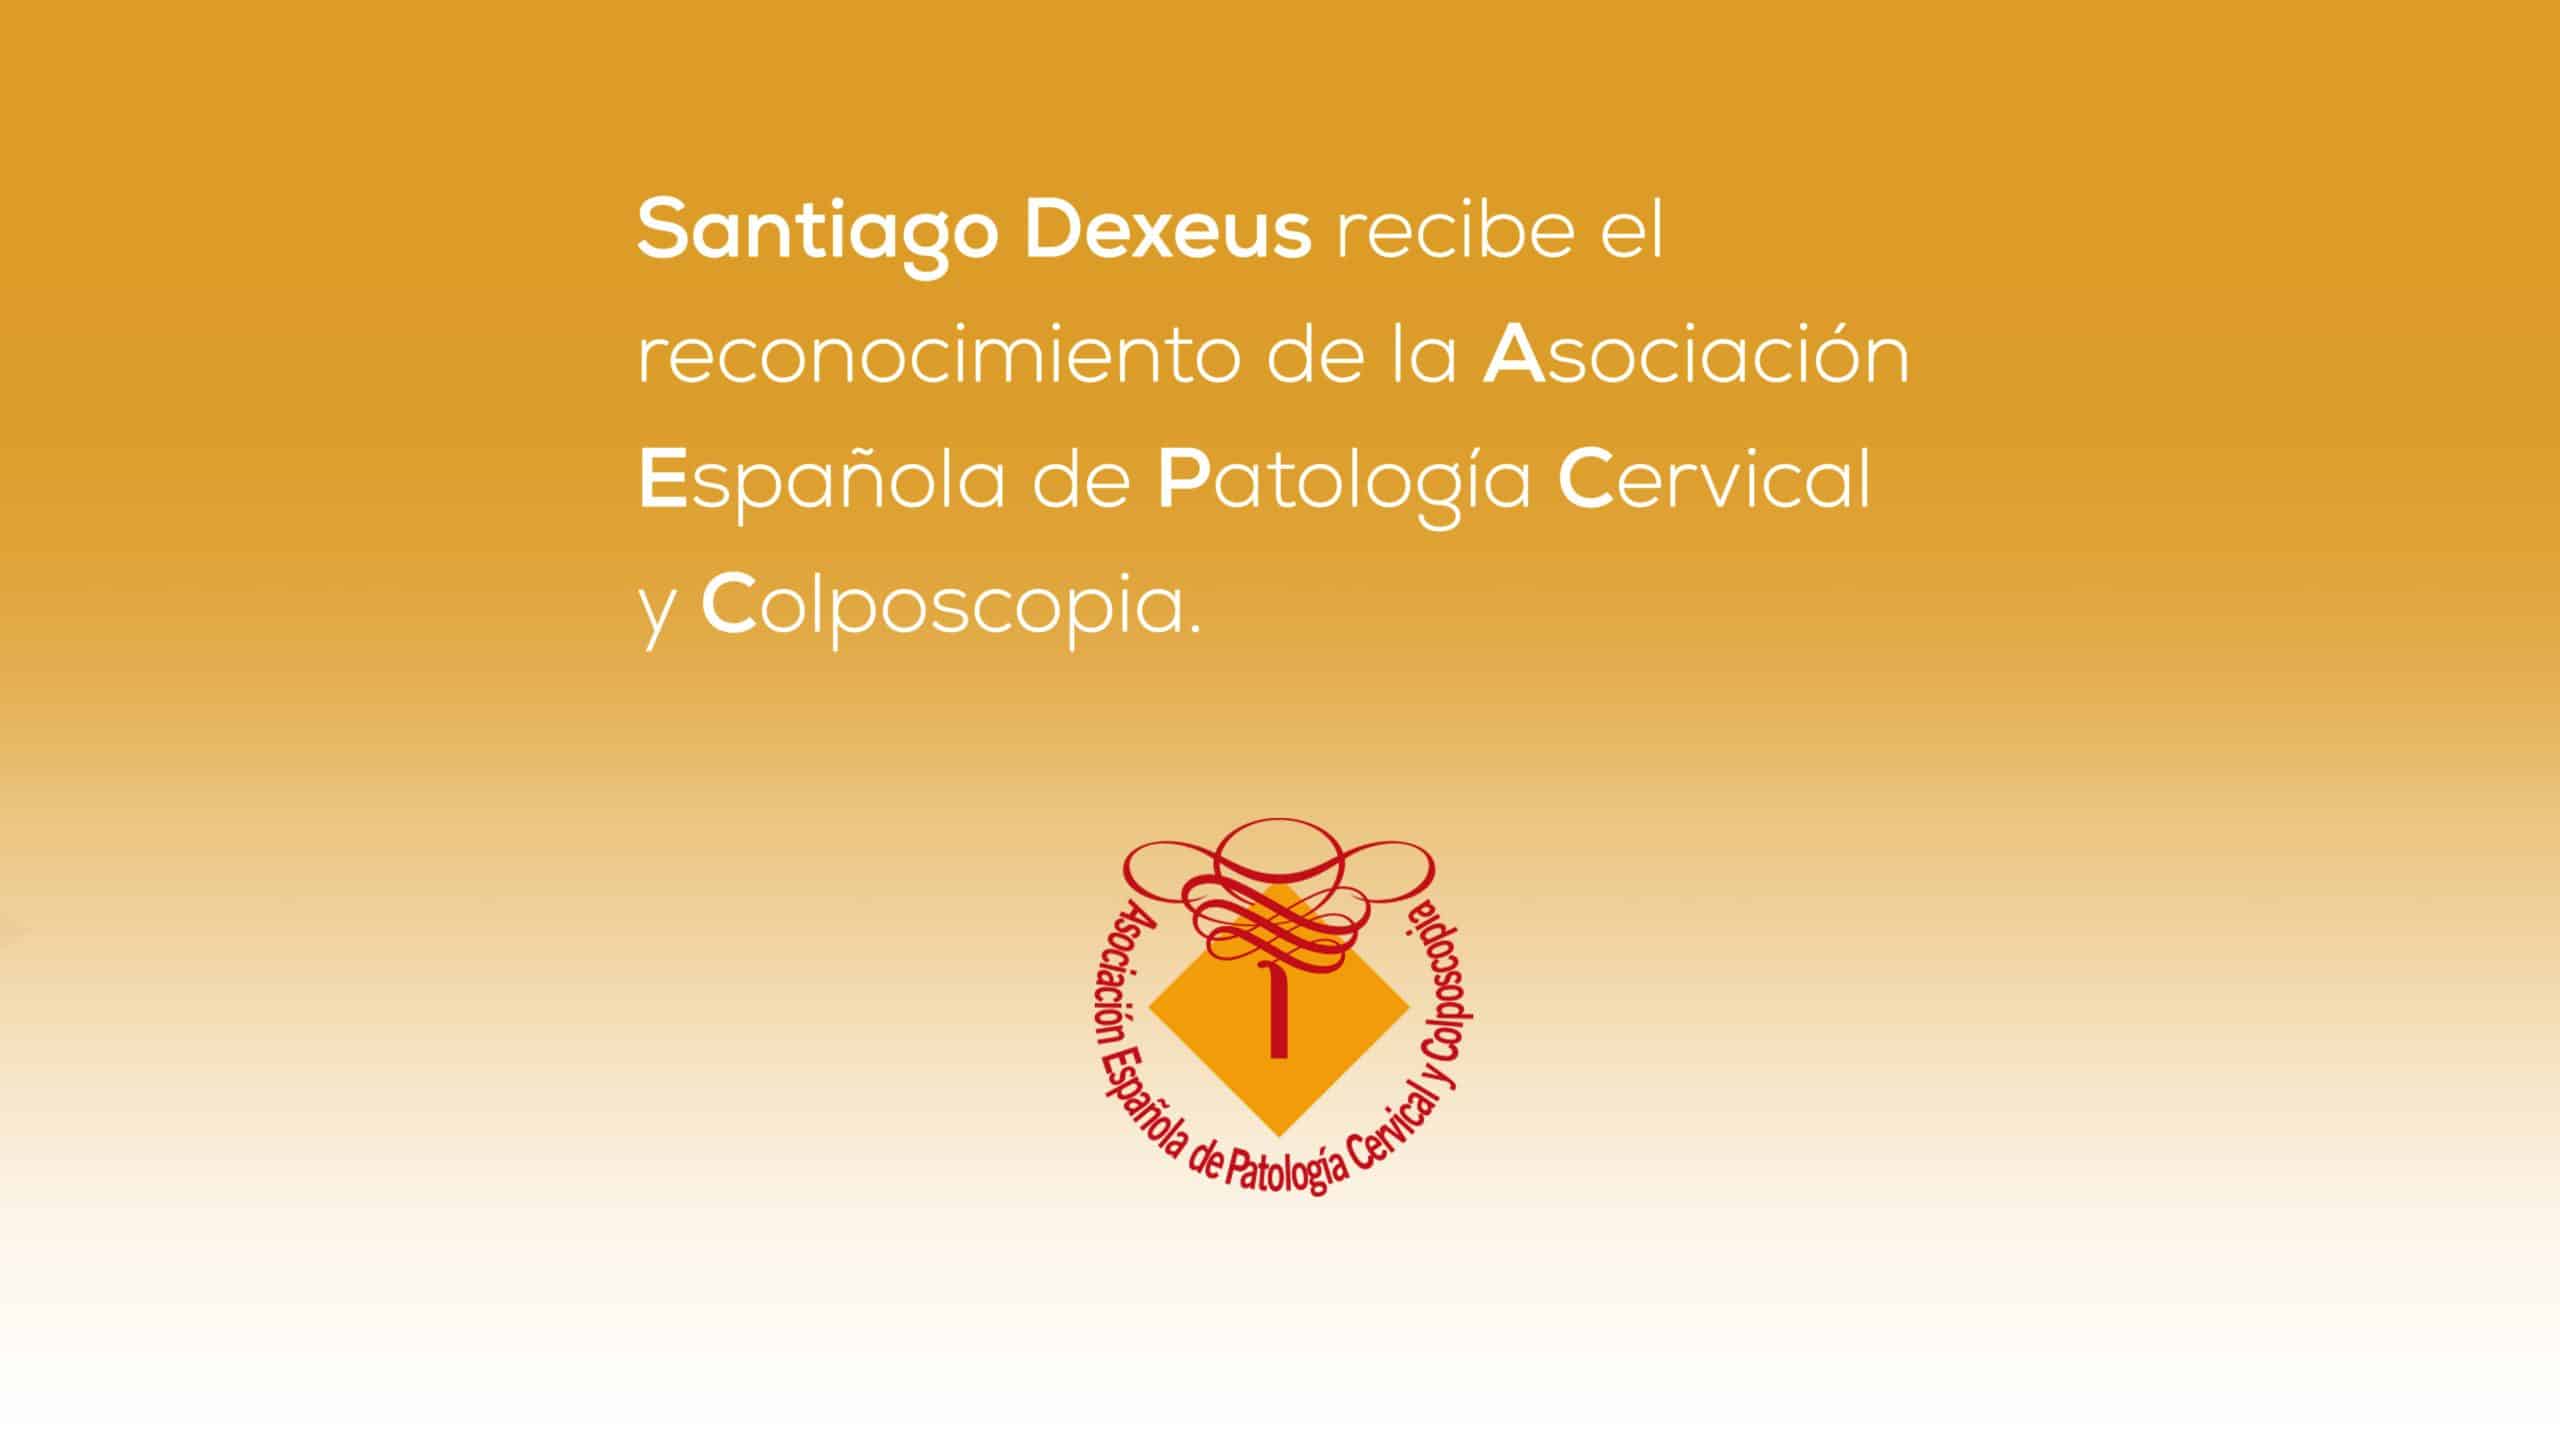 Santiago Dexeus recibe el reconocimiento de la Asociación Española de Patología Cervical y Colposcopia